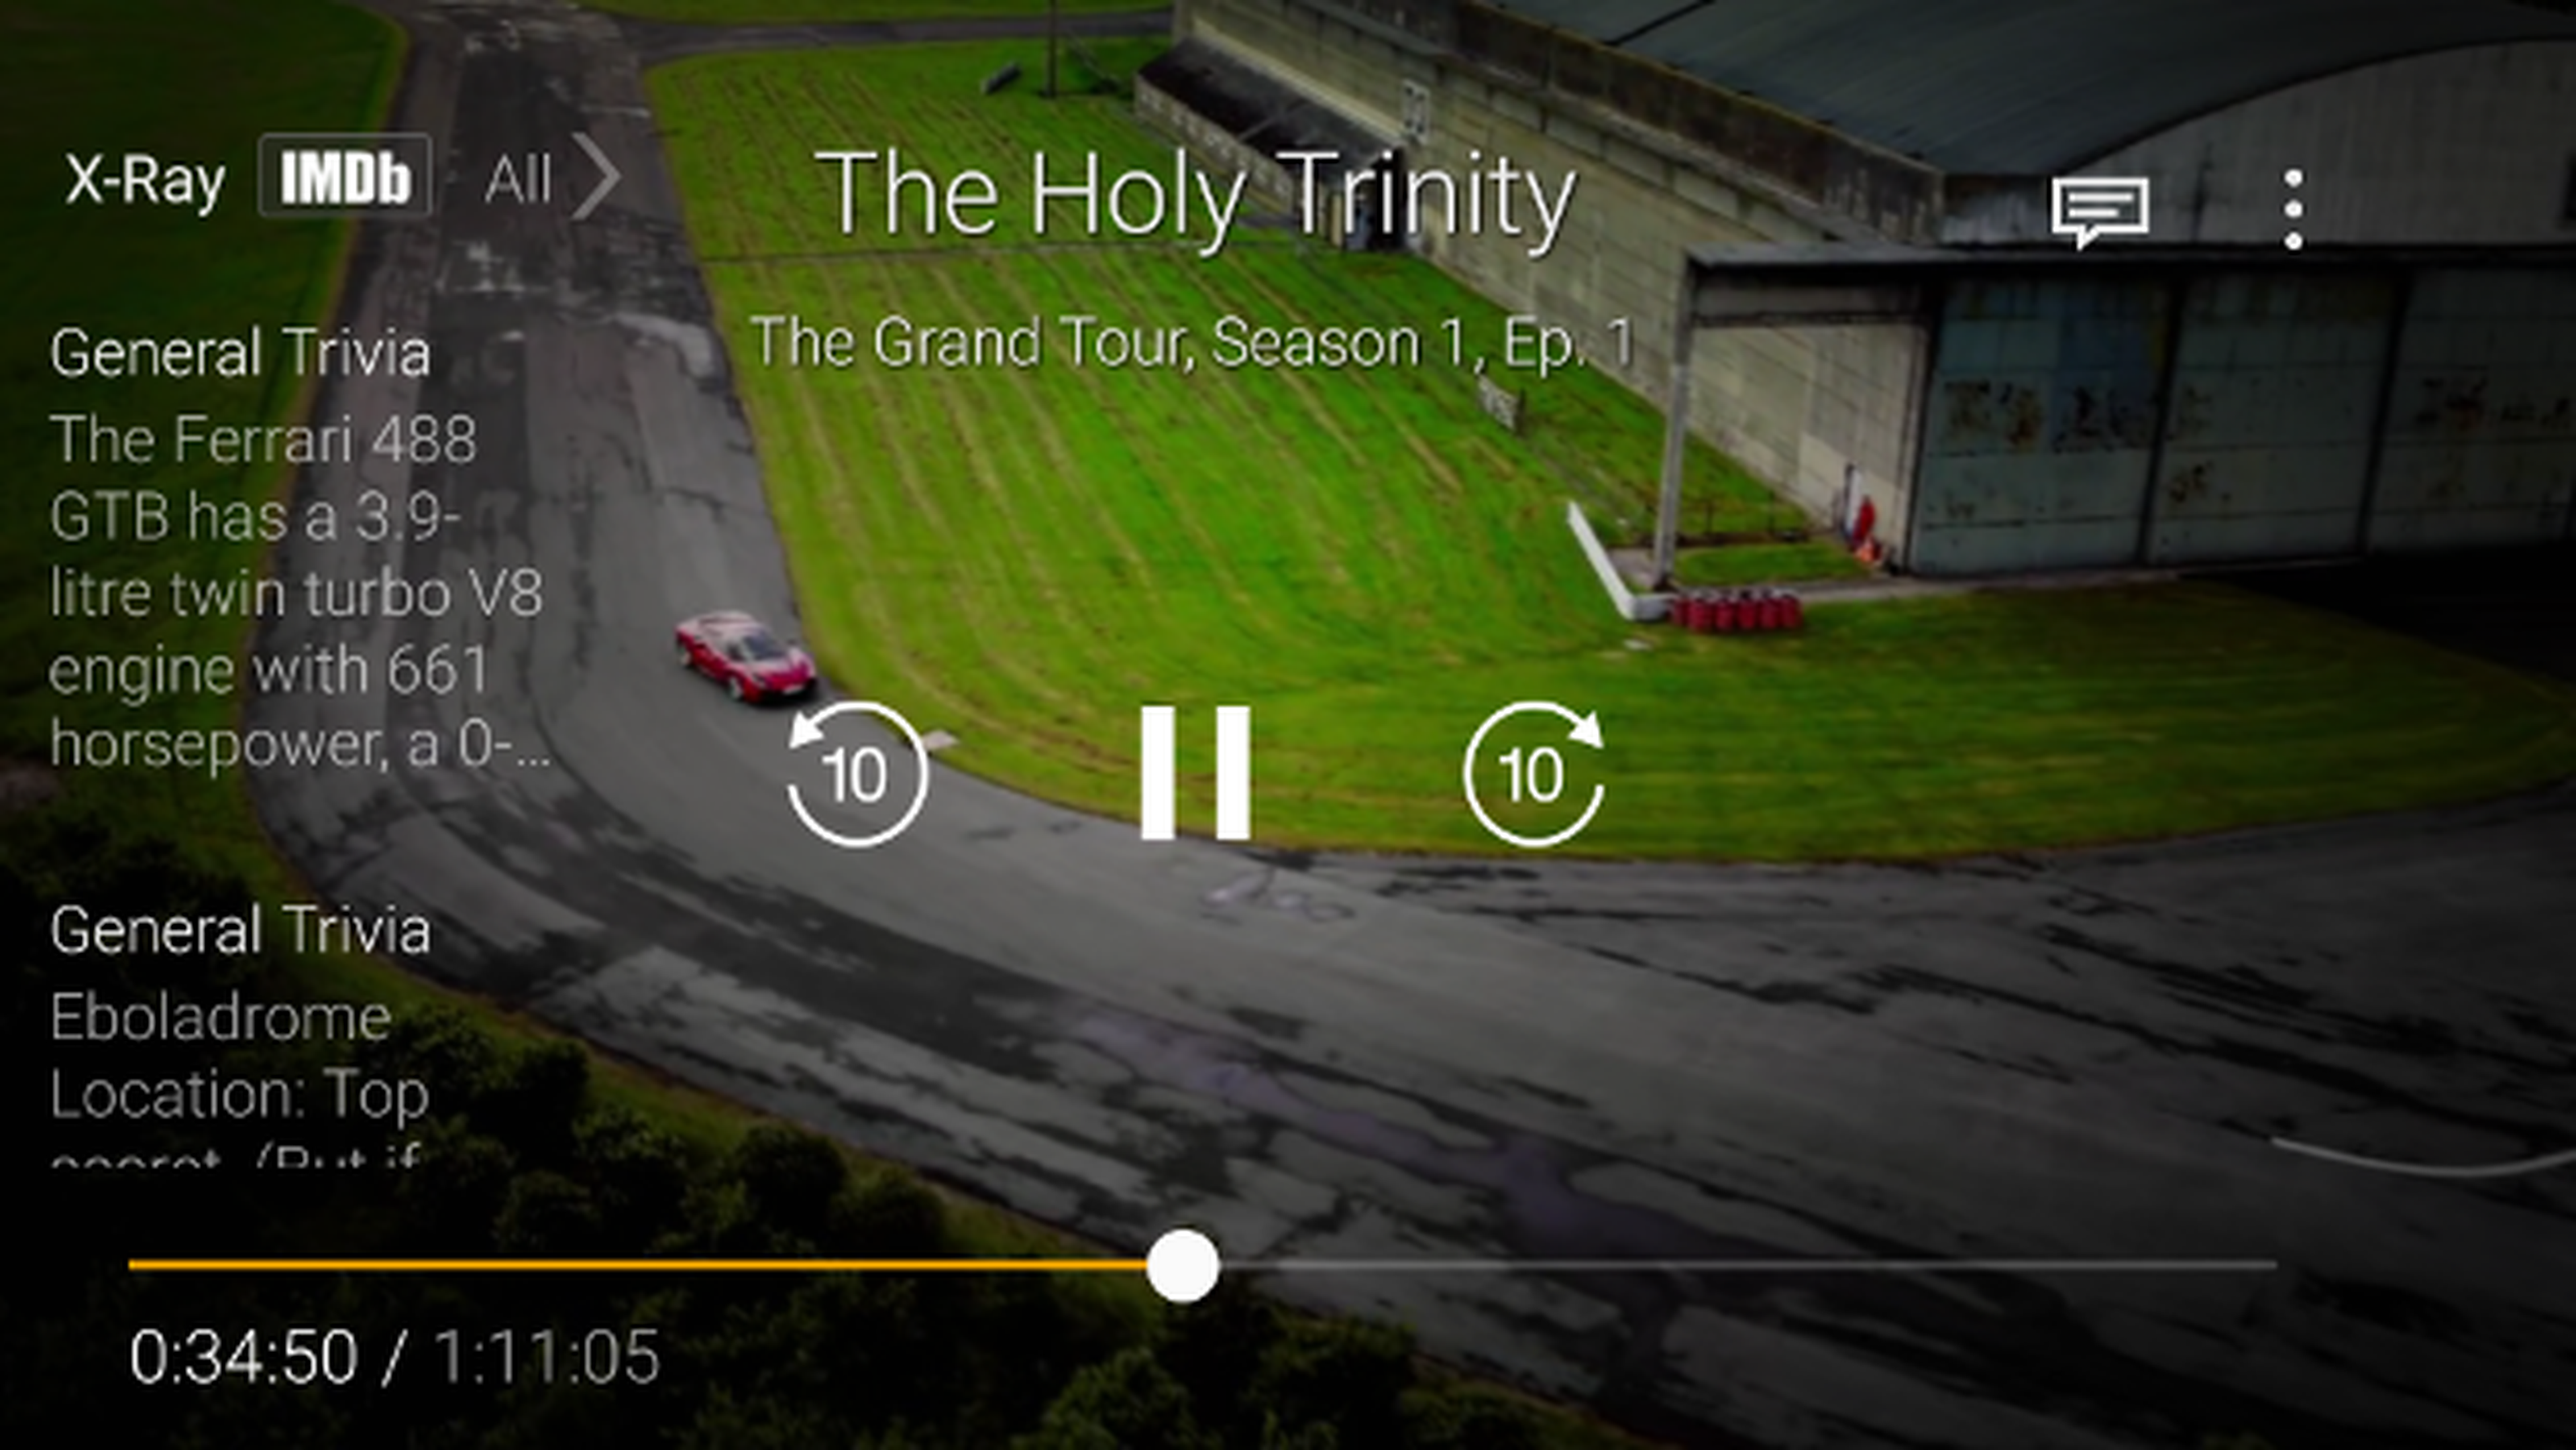 Cómo ver gratis The Grand Tour: el nuevo Top Gear de Amazon en español